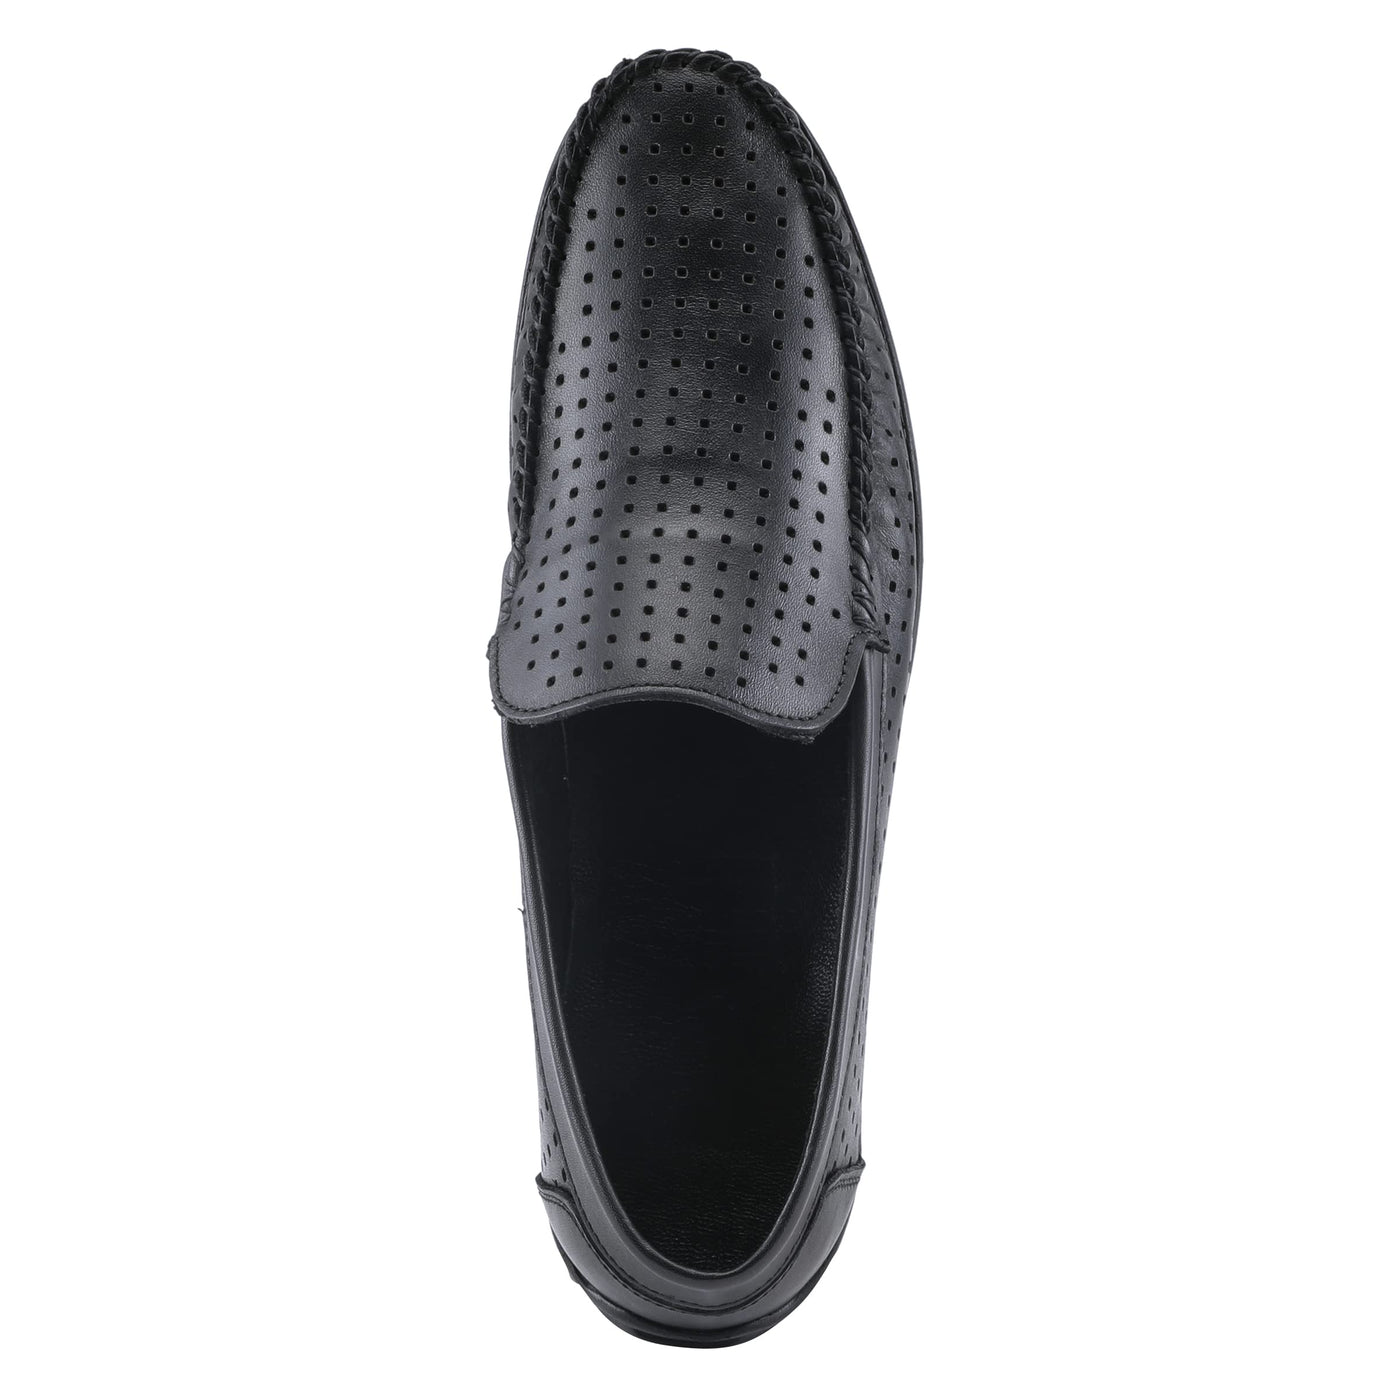 Spring Step Men's Crispin Slip-On Shoe Black EU 40 / US 7-7.5